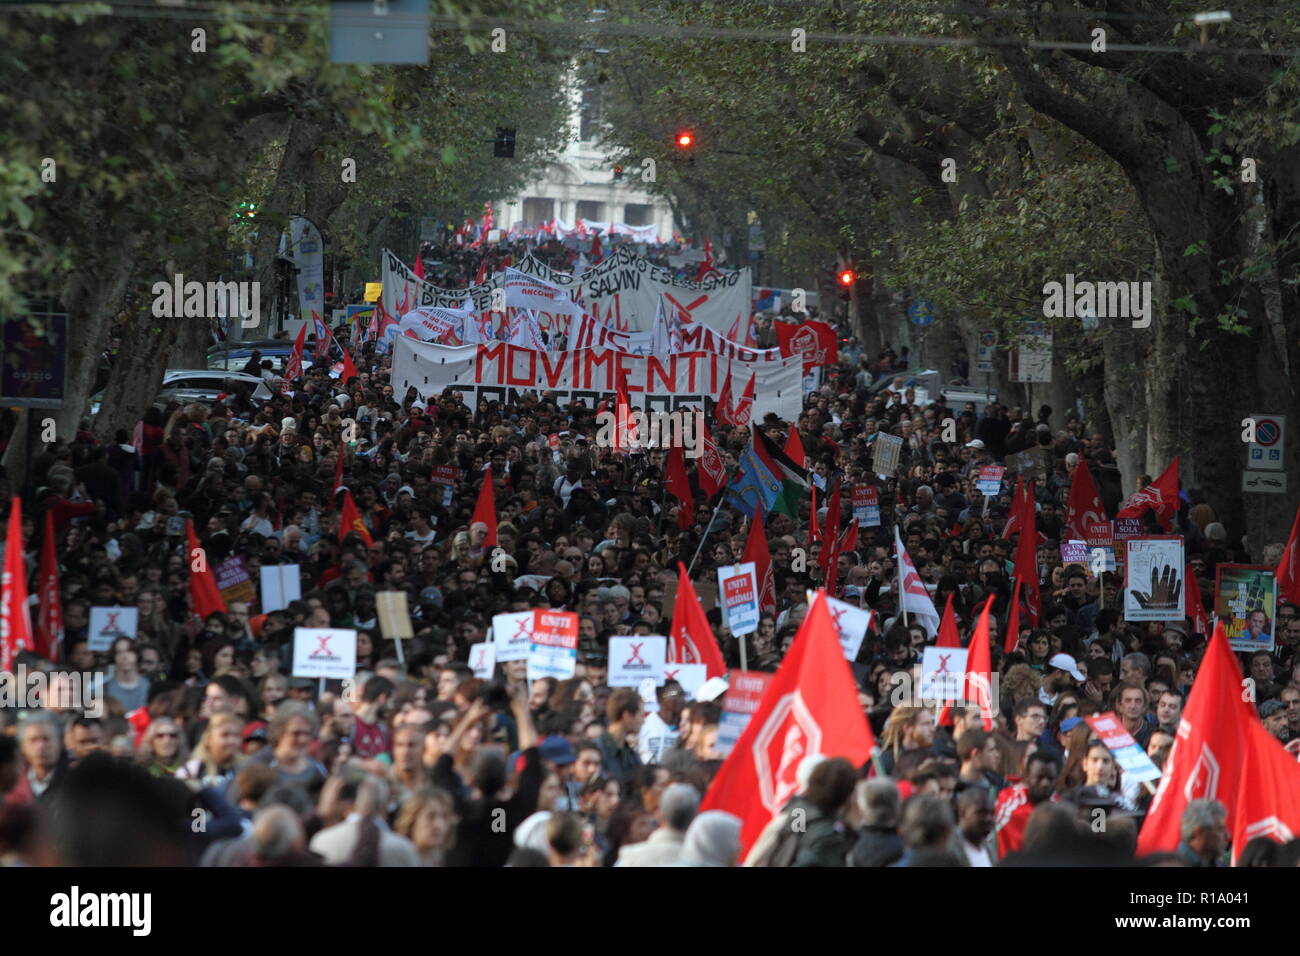 Roma, Italia - 10 novembre 2018 - L'anti-fascista e anti-razzista processione e contro il decreto di Salvini parate la sua via Meruluna Foto Stock